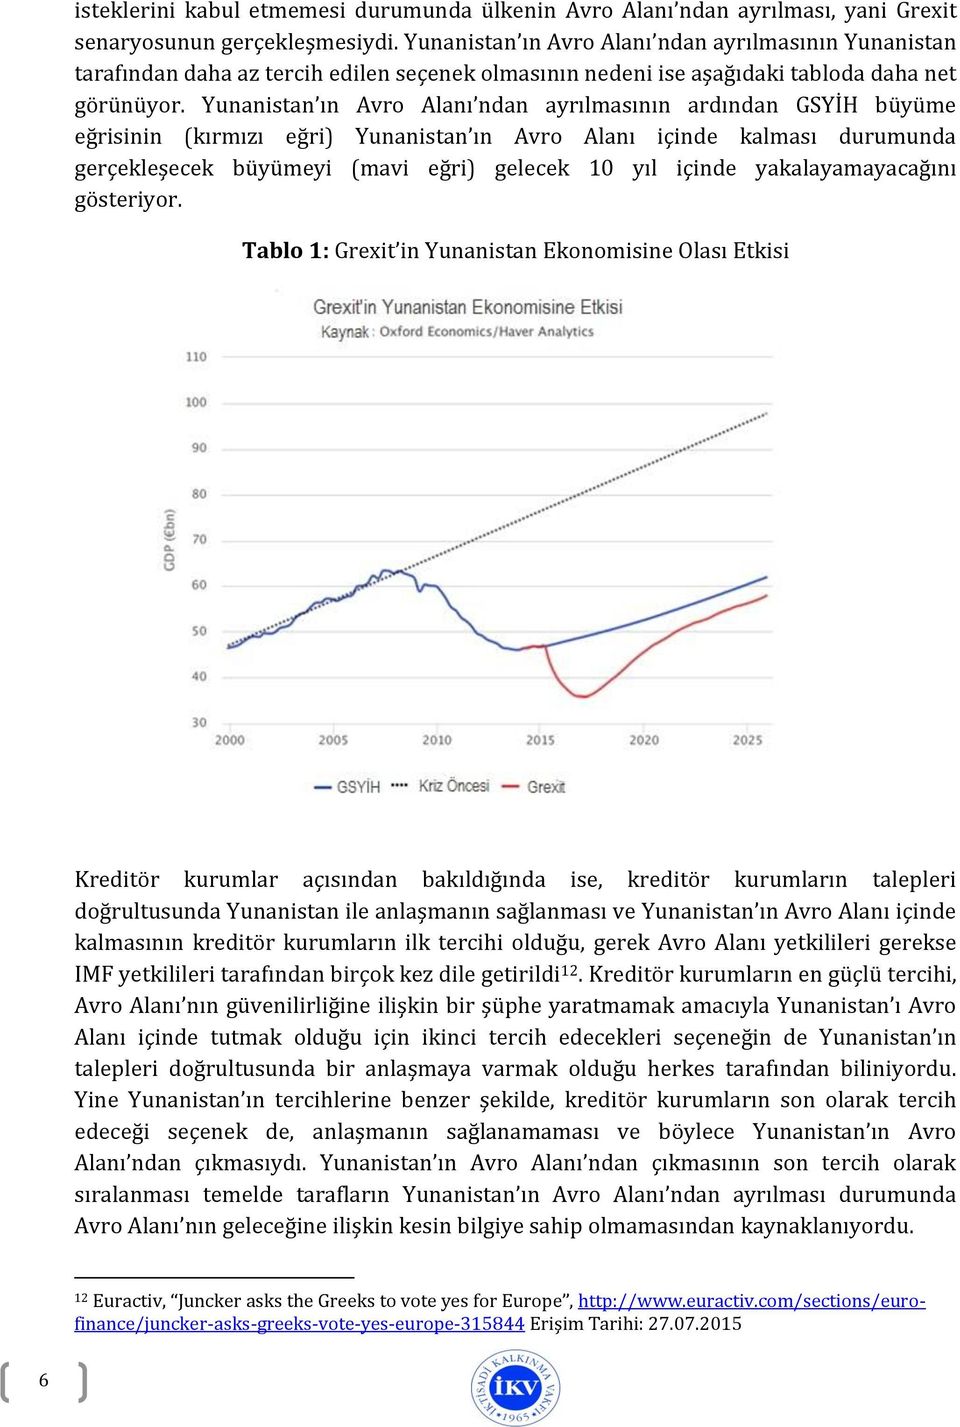 Yunanistan ın Avro Alanı ndan ayrılmasının ardından GSYİH büyüme eğrisinin (kırmızı eğri) Yunanistan ın Avro Alanı içinde kalması durumunda gerçekleşecek büyümeyi (mavi eğri) gelecek 10 yıl içinde